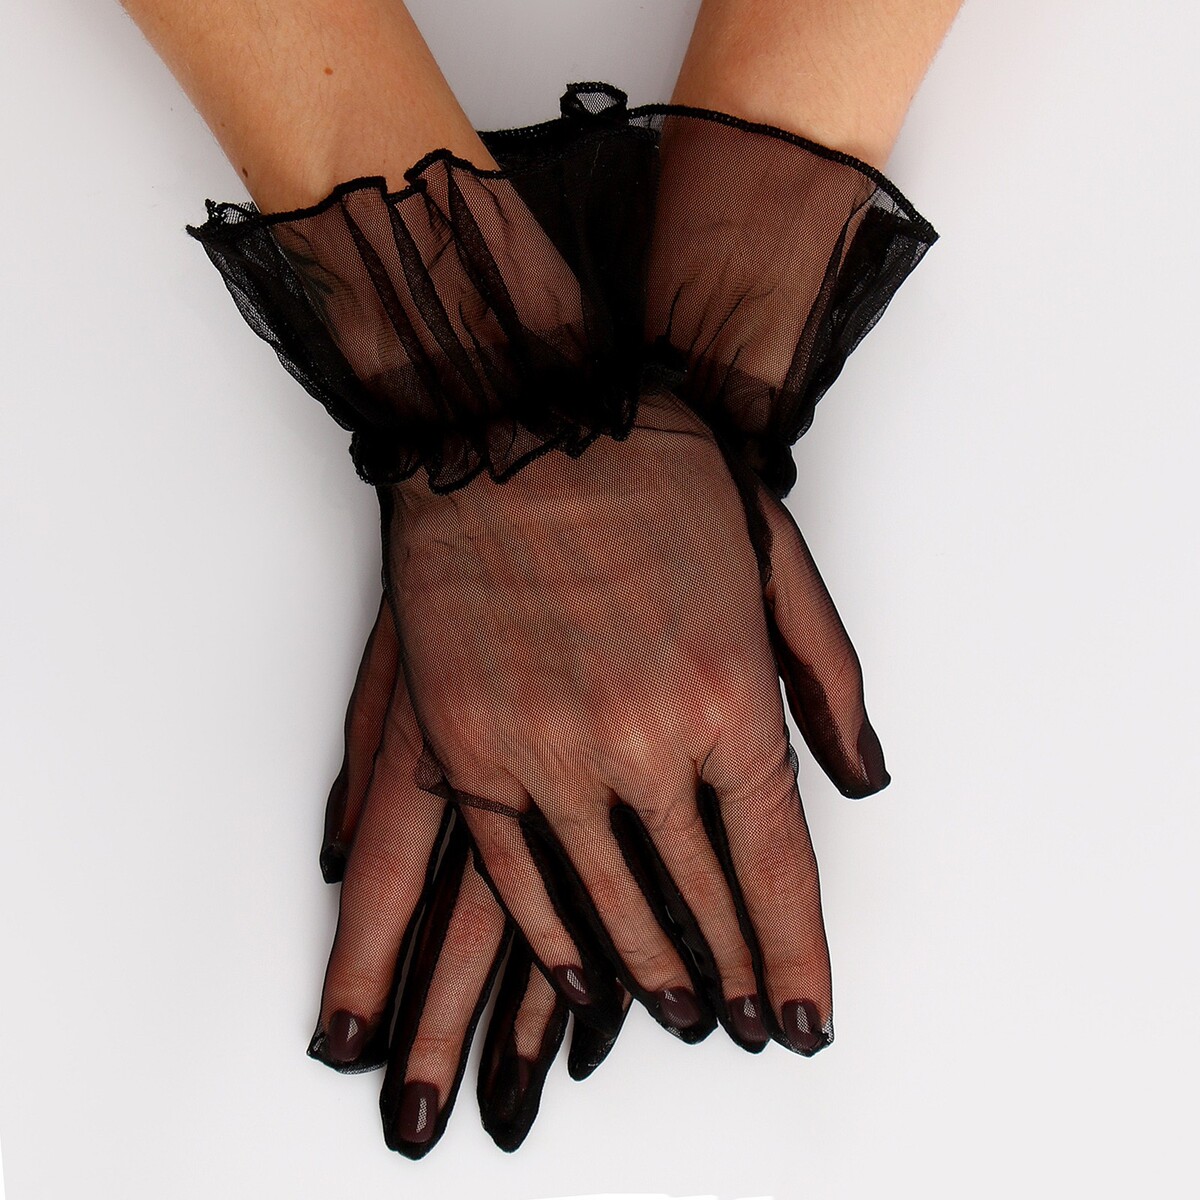 Карнавальный аксессуар - перчатки прозрачные с юбочкой, цвет черный карнавальный аксессуар перчатки прозрачные с юбочкой розовый